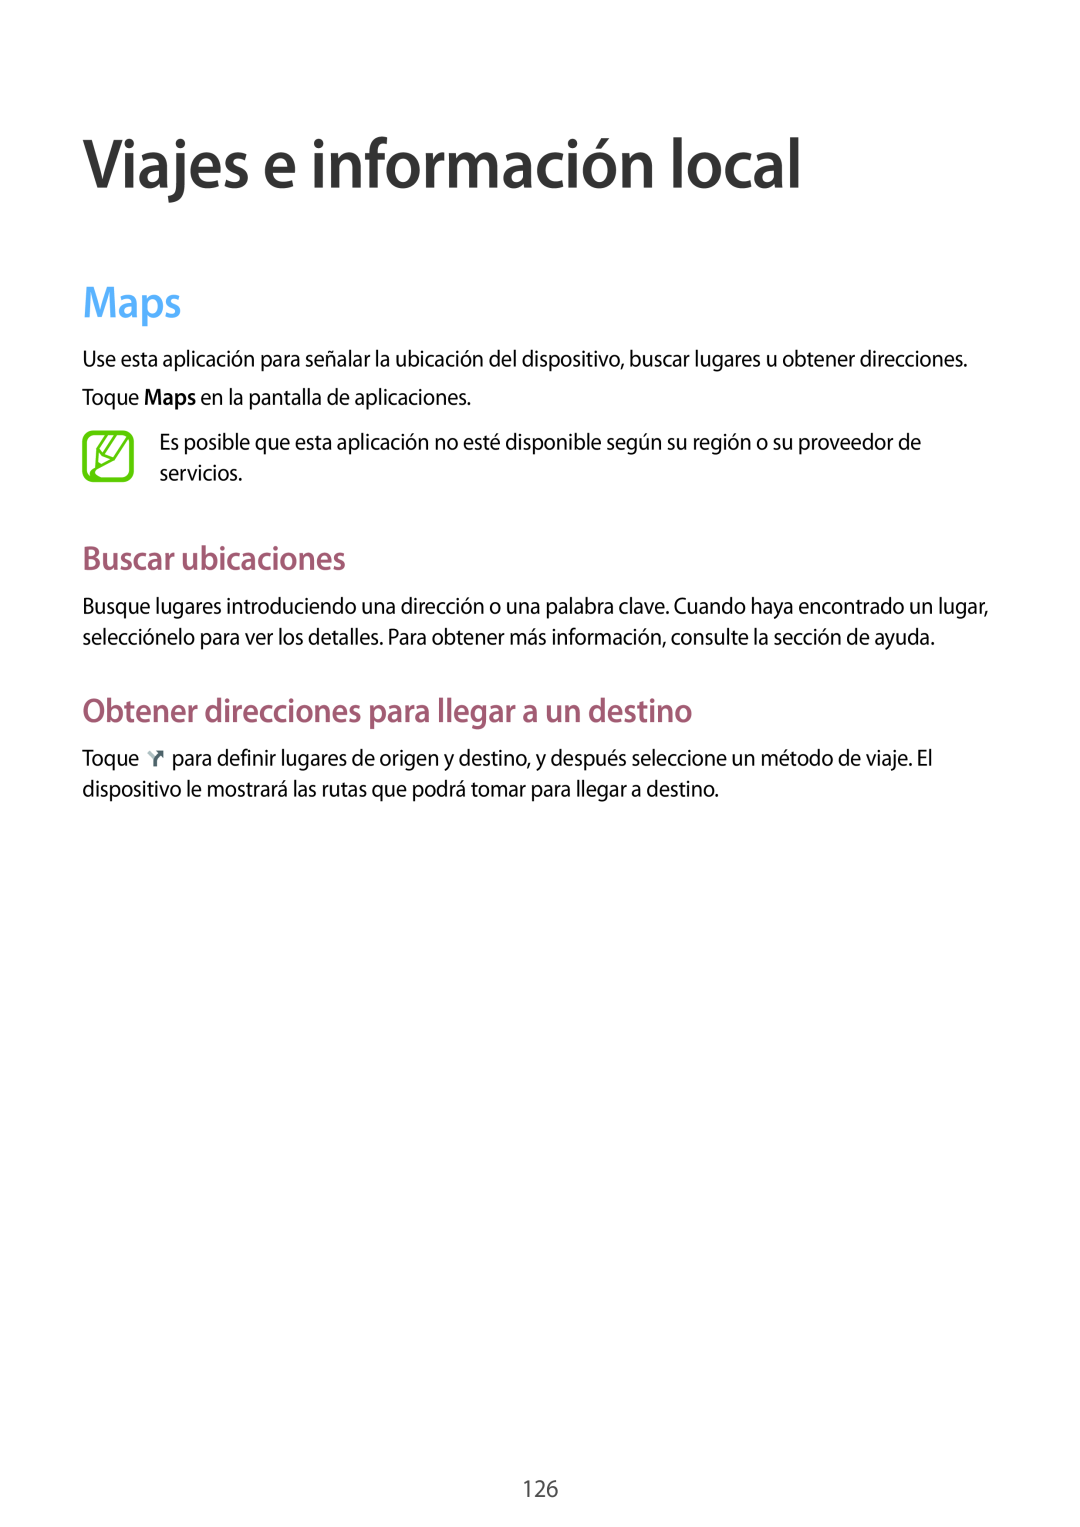 Samsung SM-T320NZWAXSK Viajes e información local, Maps, Buscar ubicaciones, Obtener direcciones para llegar a un destino 